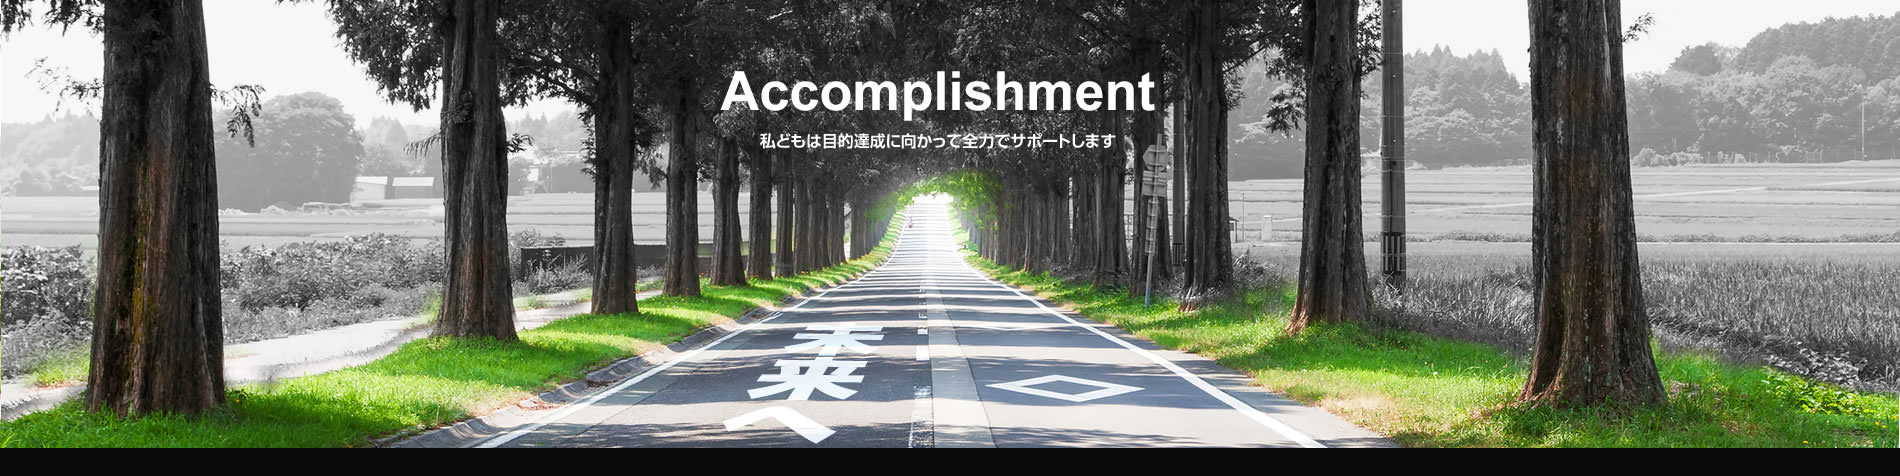 Accomplishment 私どもは目的達成に向かって全力でサポートします